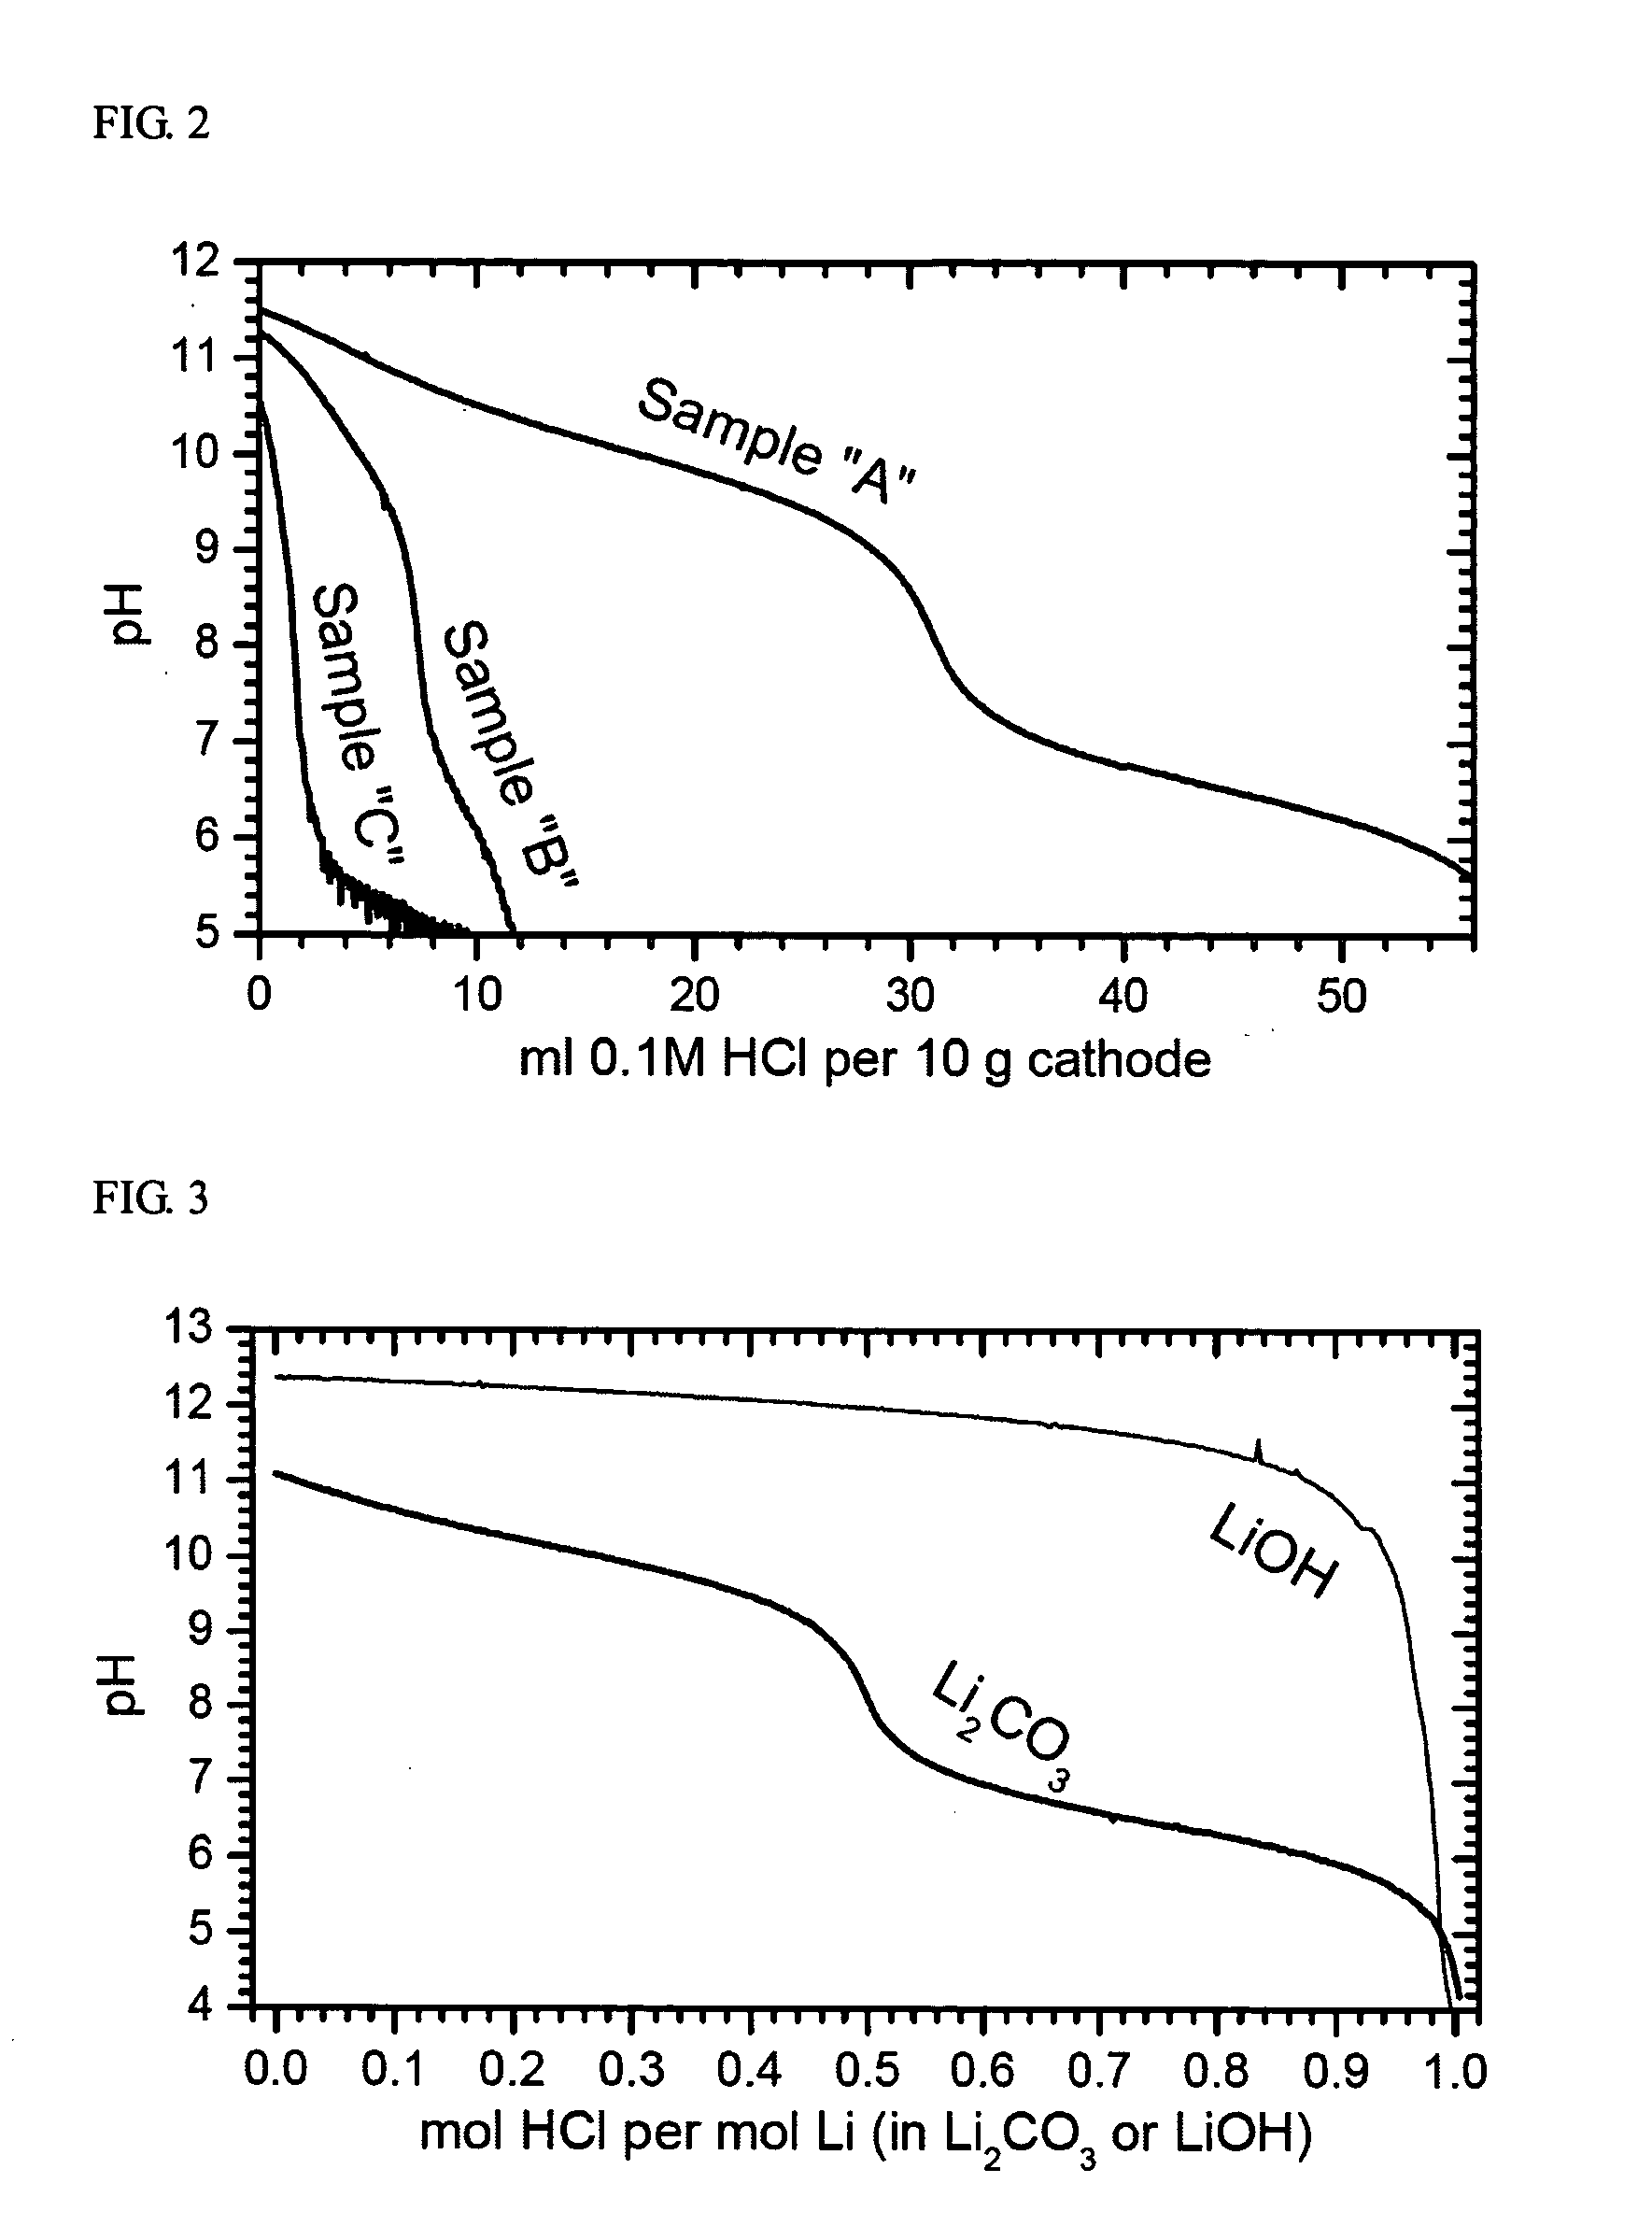 Ni-based lithium transition metal oxide